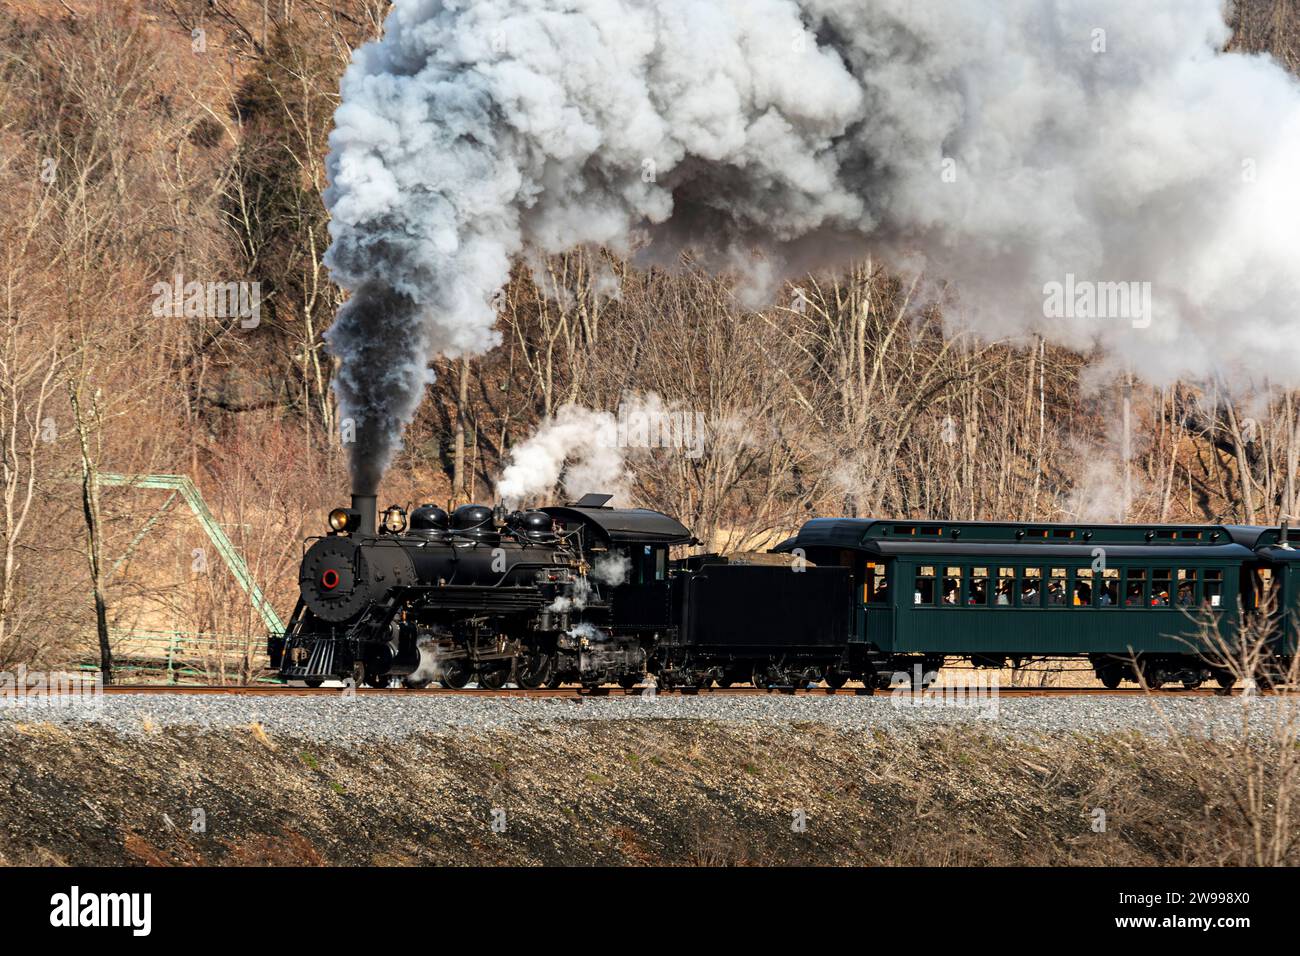 Vue d'un train de passagers à vapeur restauré à voie étroite, soufflant de la fumée noire et de la vapeur blanche, voyageant à travers les terres agricoles par un jour d'hiver Banque D'Images